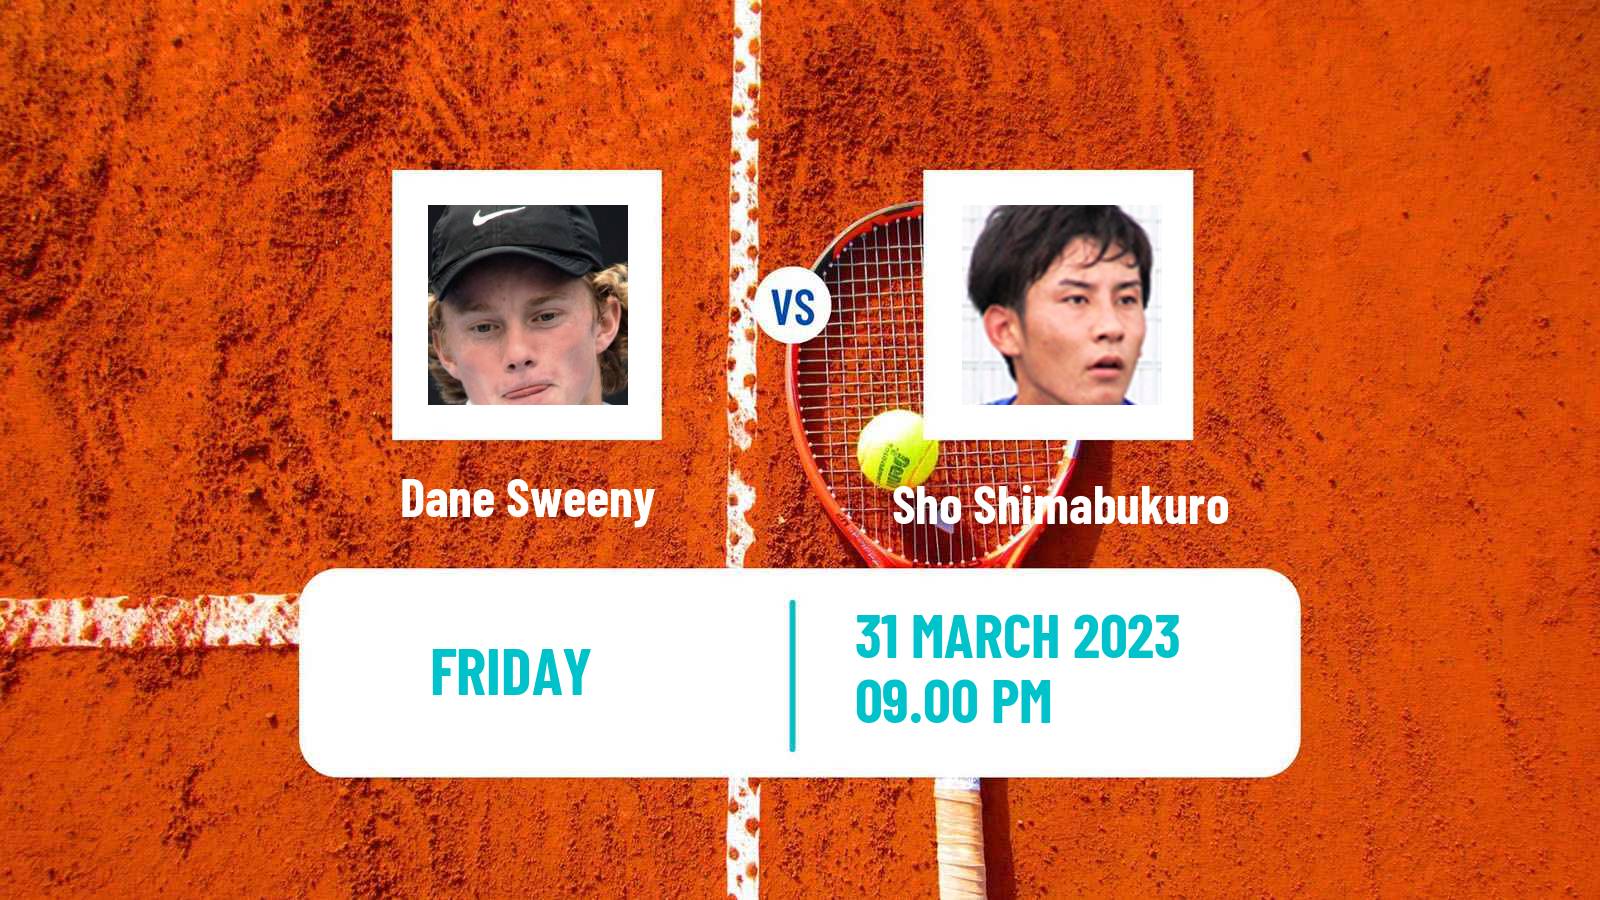 Tennis ITF Tournaments Dane Sweeny - Sho Shimabukuro